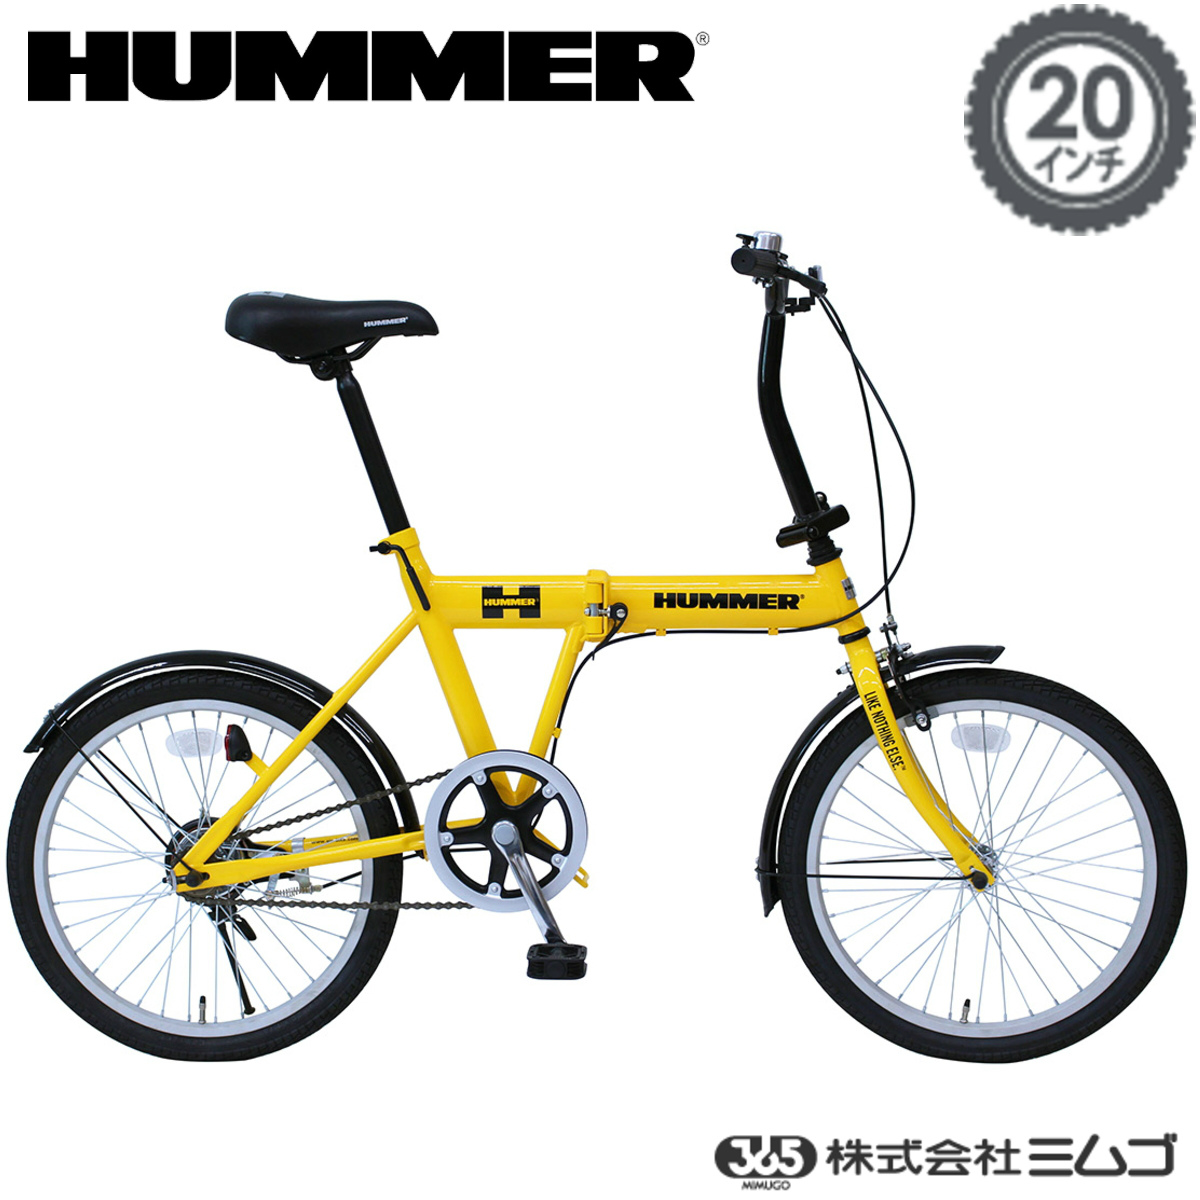 ミムゴ HUMMER(ハマー) FDB20L 折りたたみ自転車 20インチ イエロー MG-HM20L 1年保証